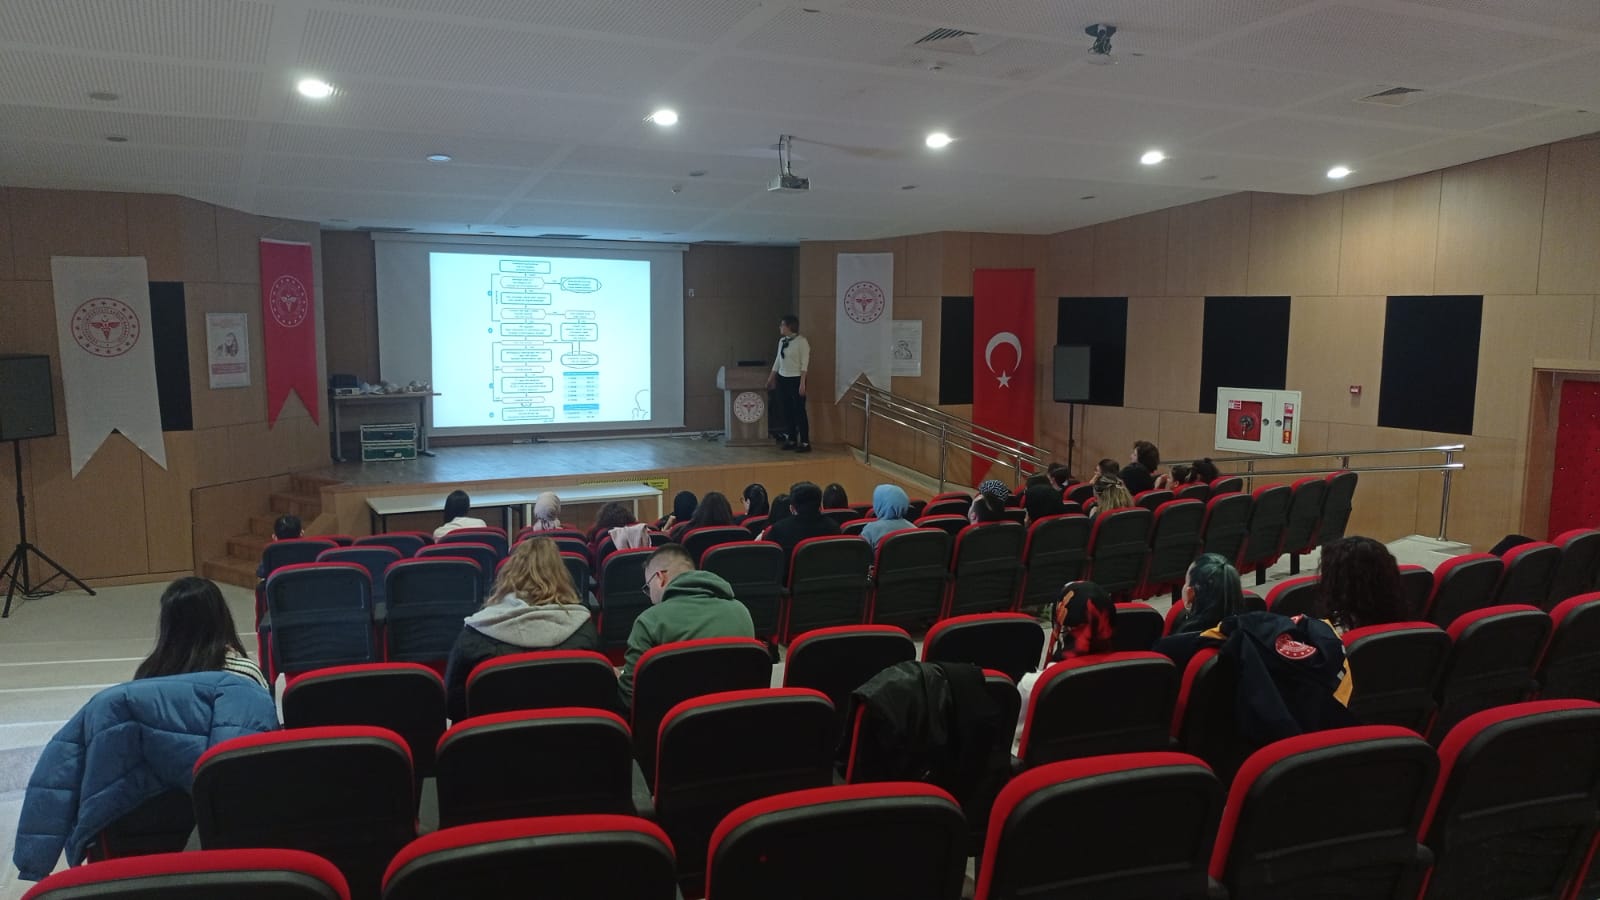 Kırklareli Eğitim ve Araştırma Hastanesinde Yenidoğan Canlandırma (NRP) Eğitimi Düzenlendi.